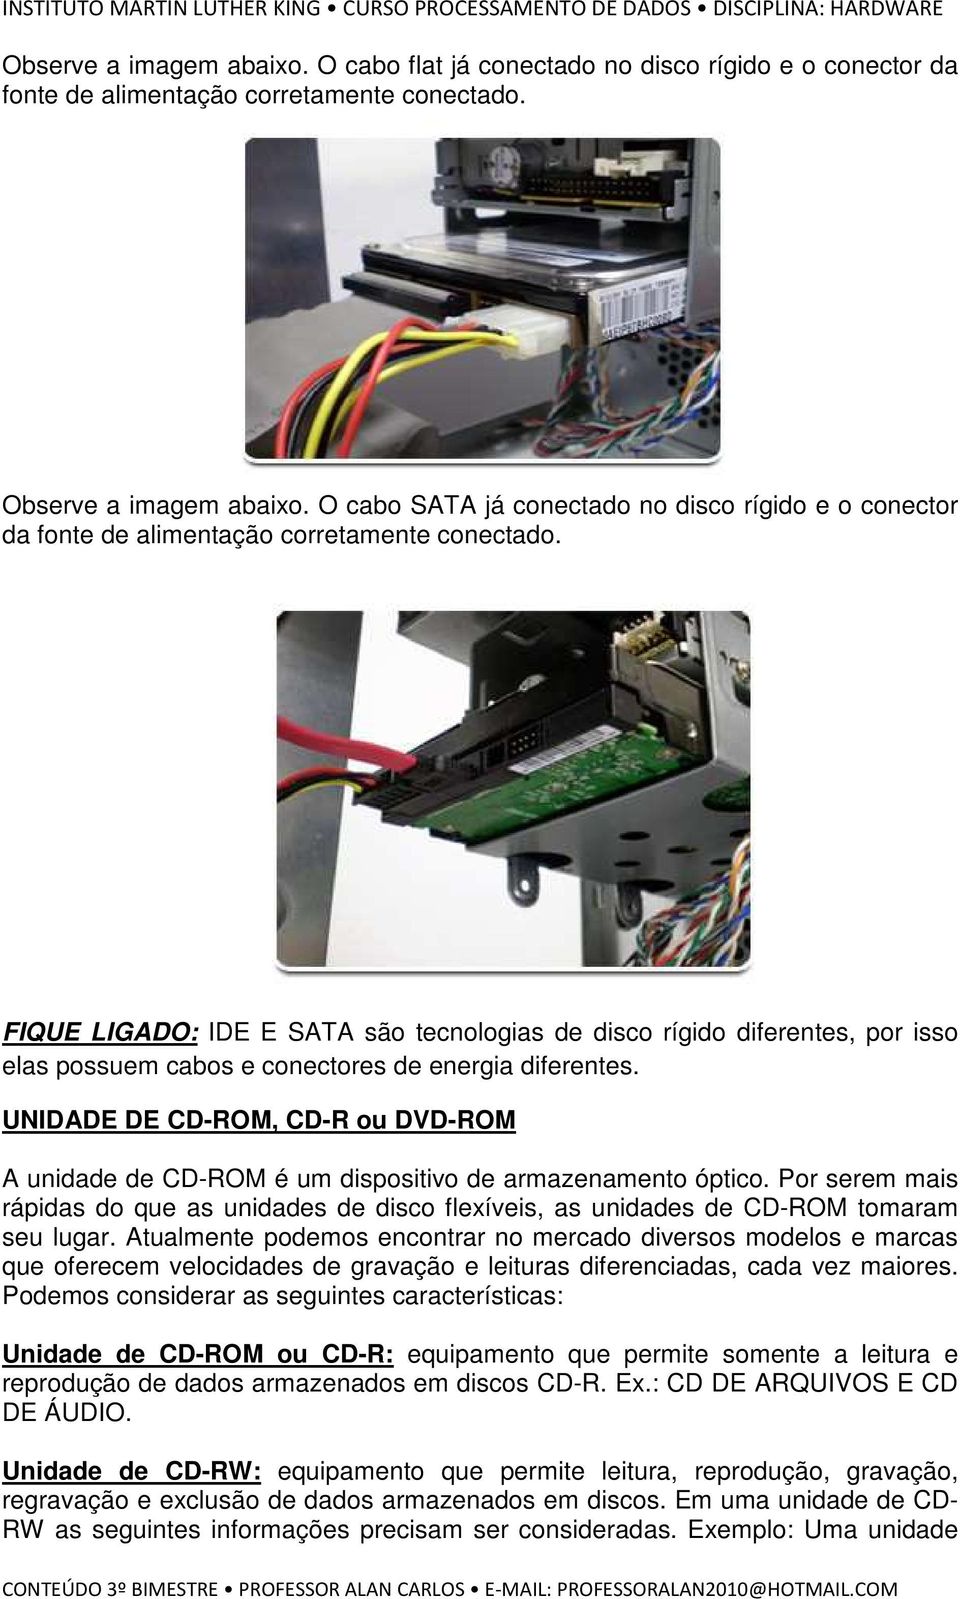 FIQUE LIGADO: IDE E SATA são tecnologias de disco rígido diferentes, por isso elas possuem cabos e conectores de energia diferentes.